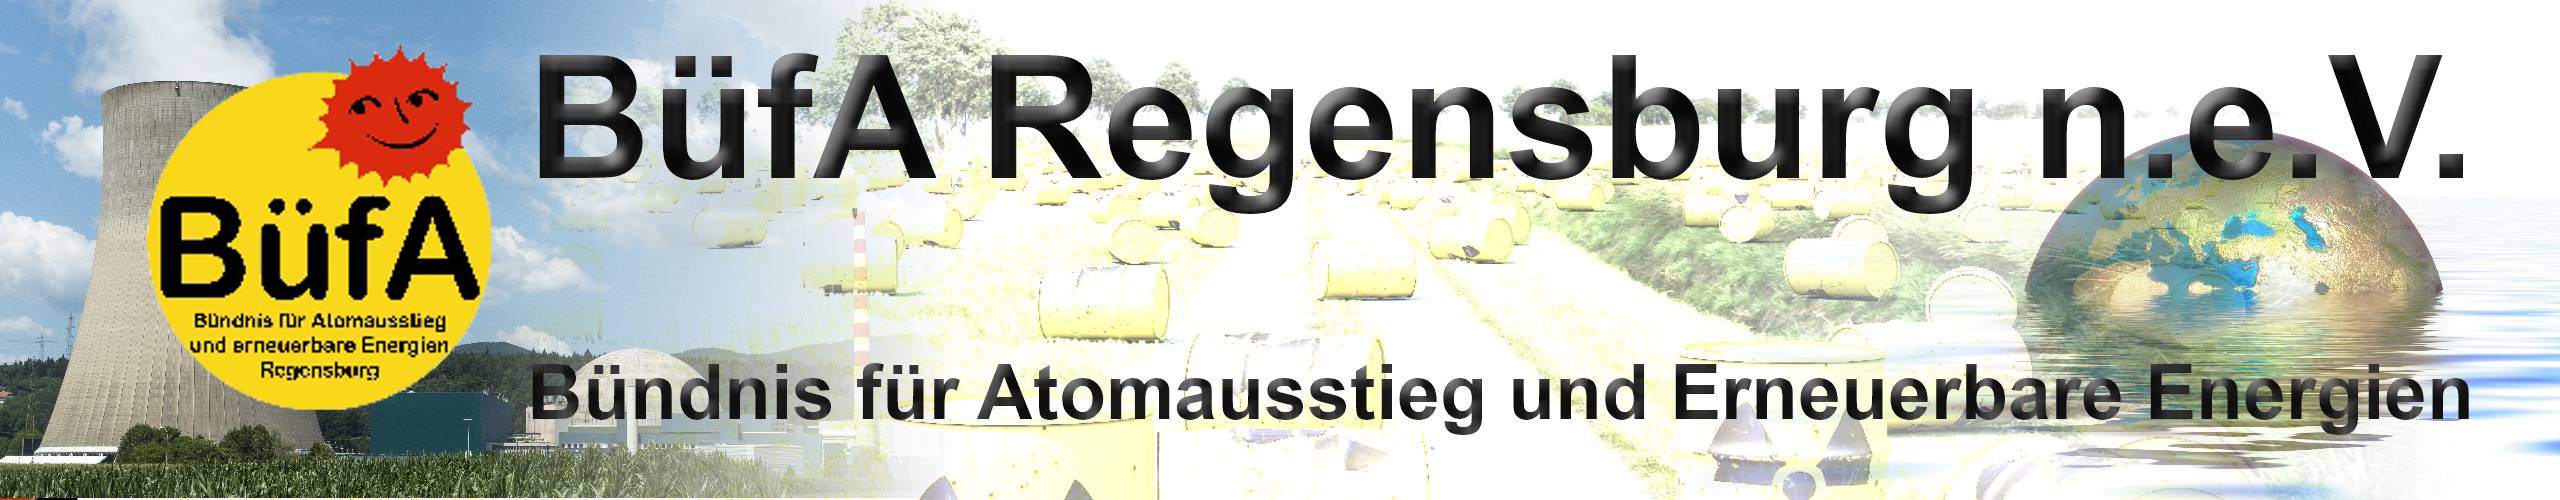 BüfA Regensburg n.e.V. – Bündnis für Atomausstieg und erneuerbare Energien